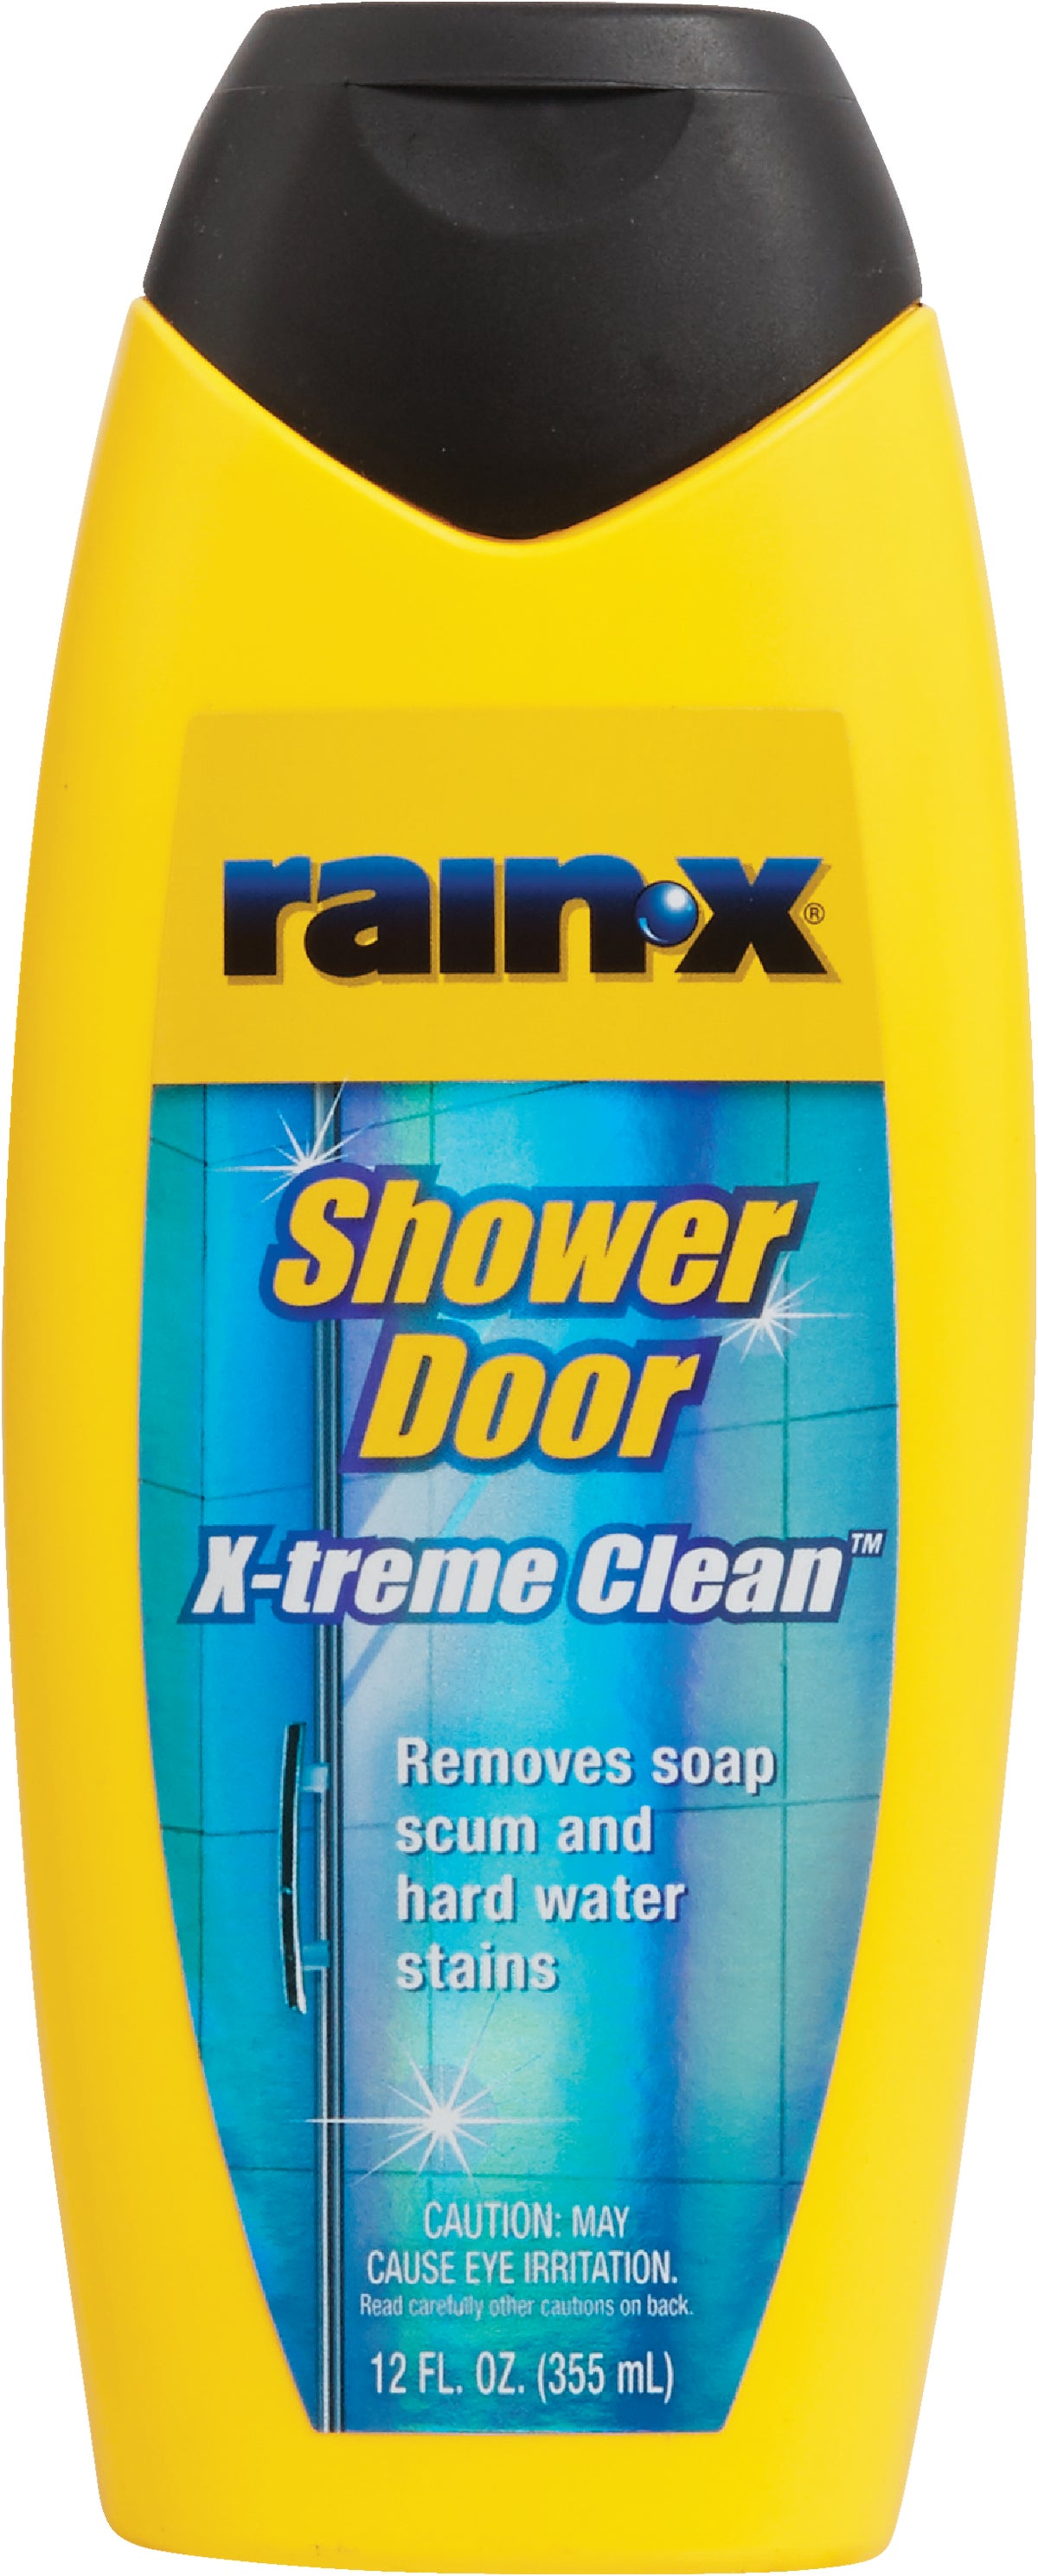 Rain-X Shower Door X-treme Clean Shower Cleaner 12 Oz.